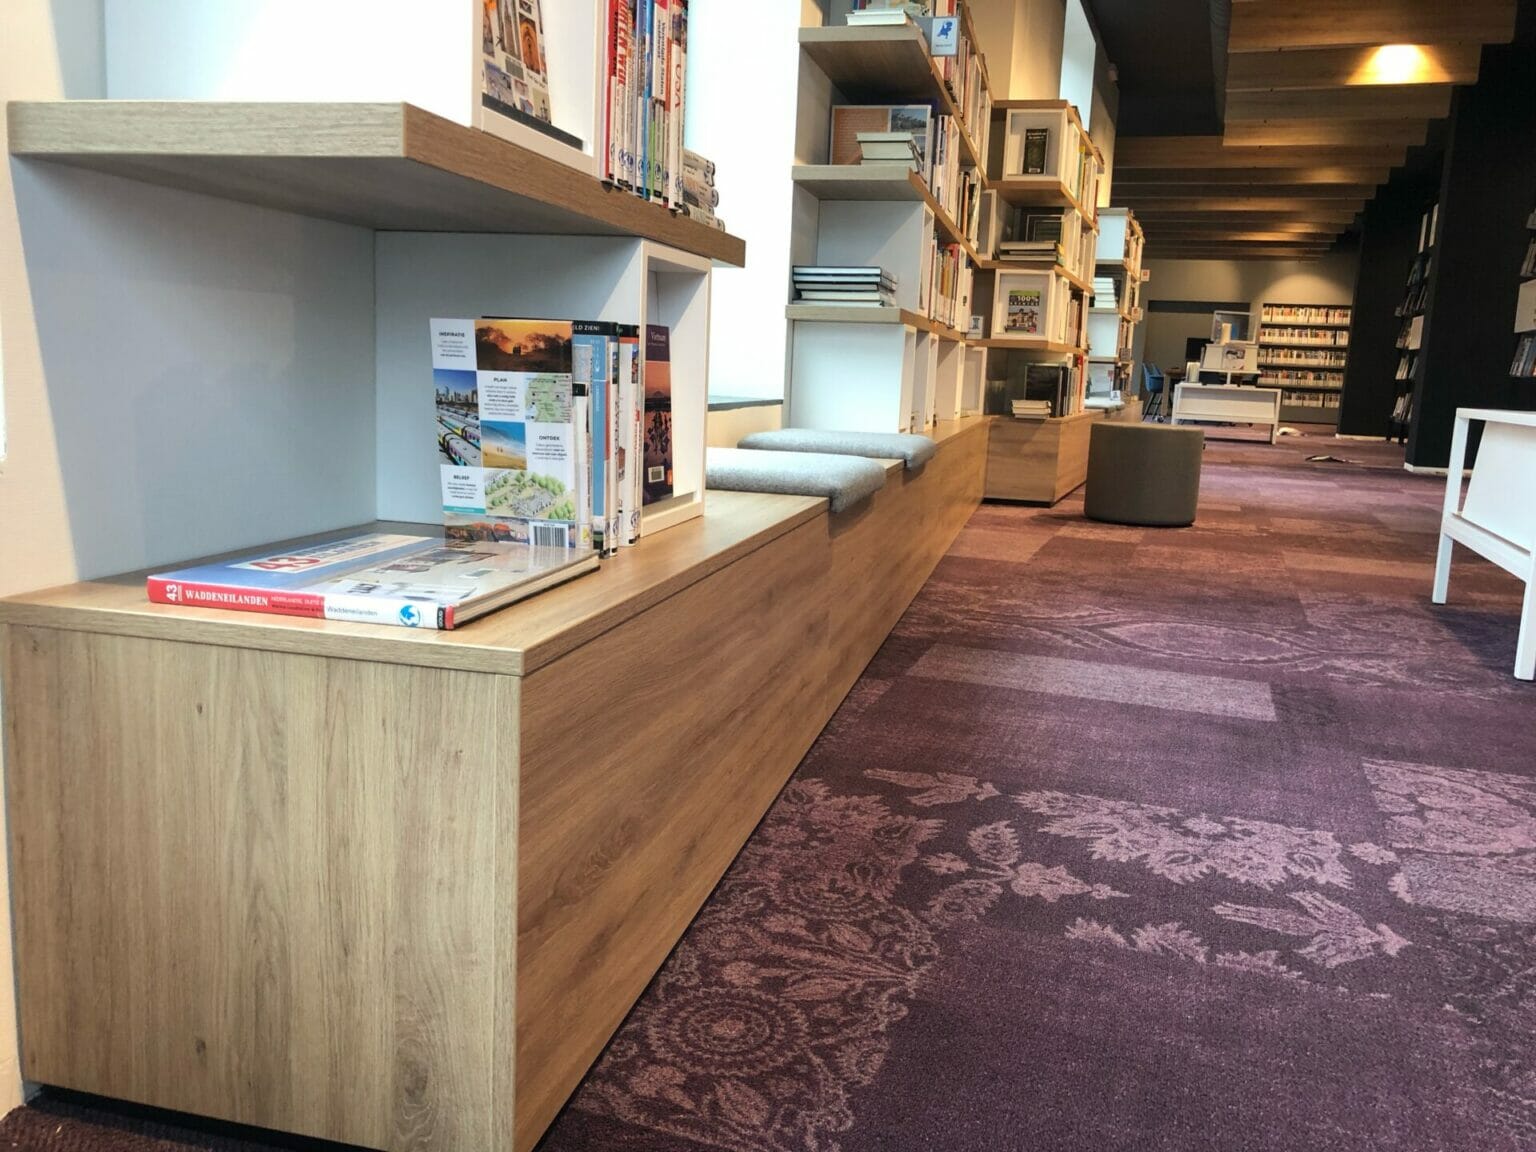 Bibliotheek zeeuws vlaanderen houten boekenkasten ege tapijt